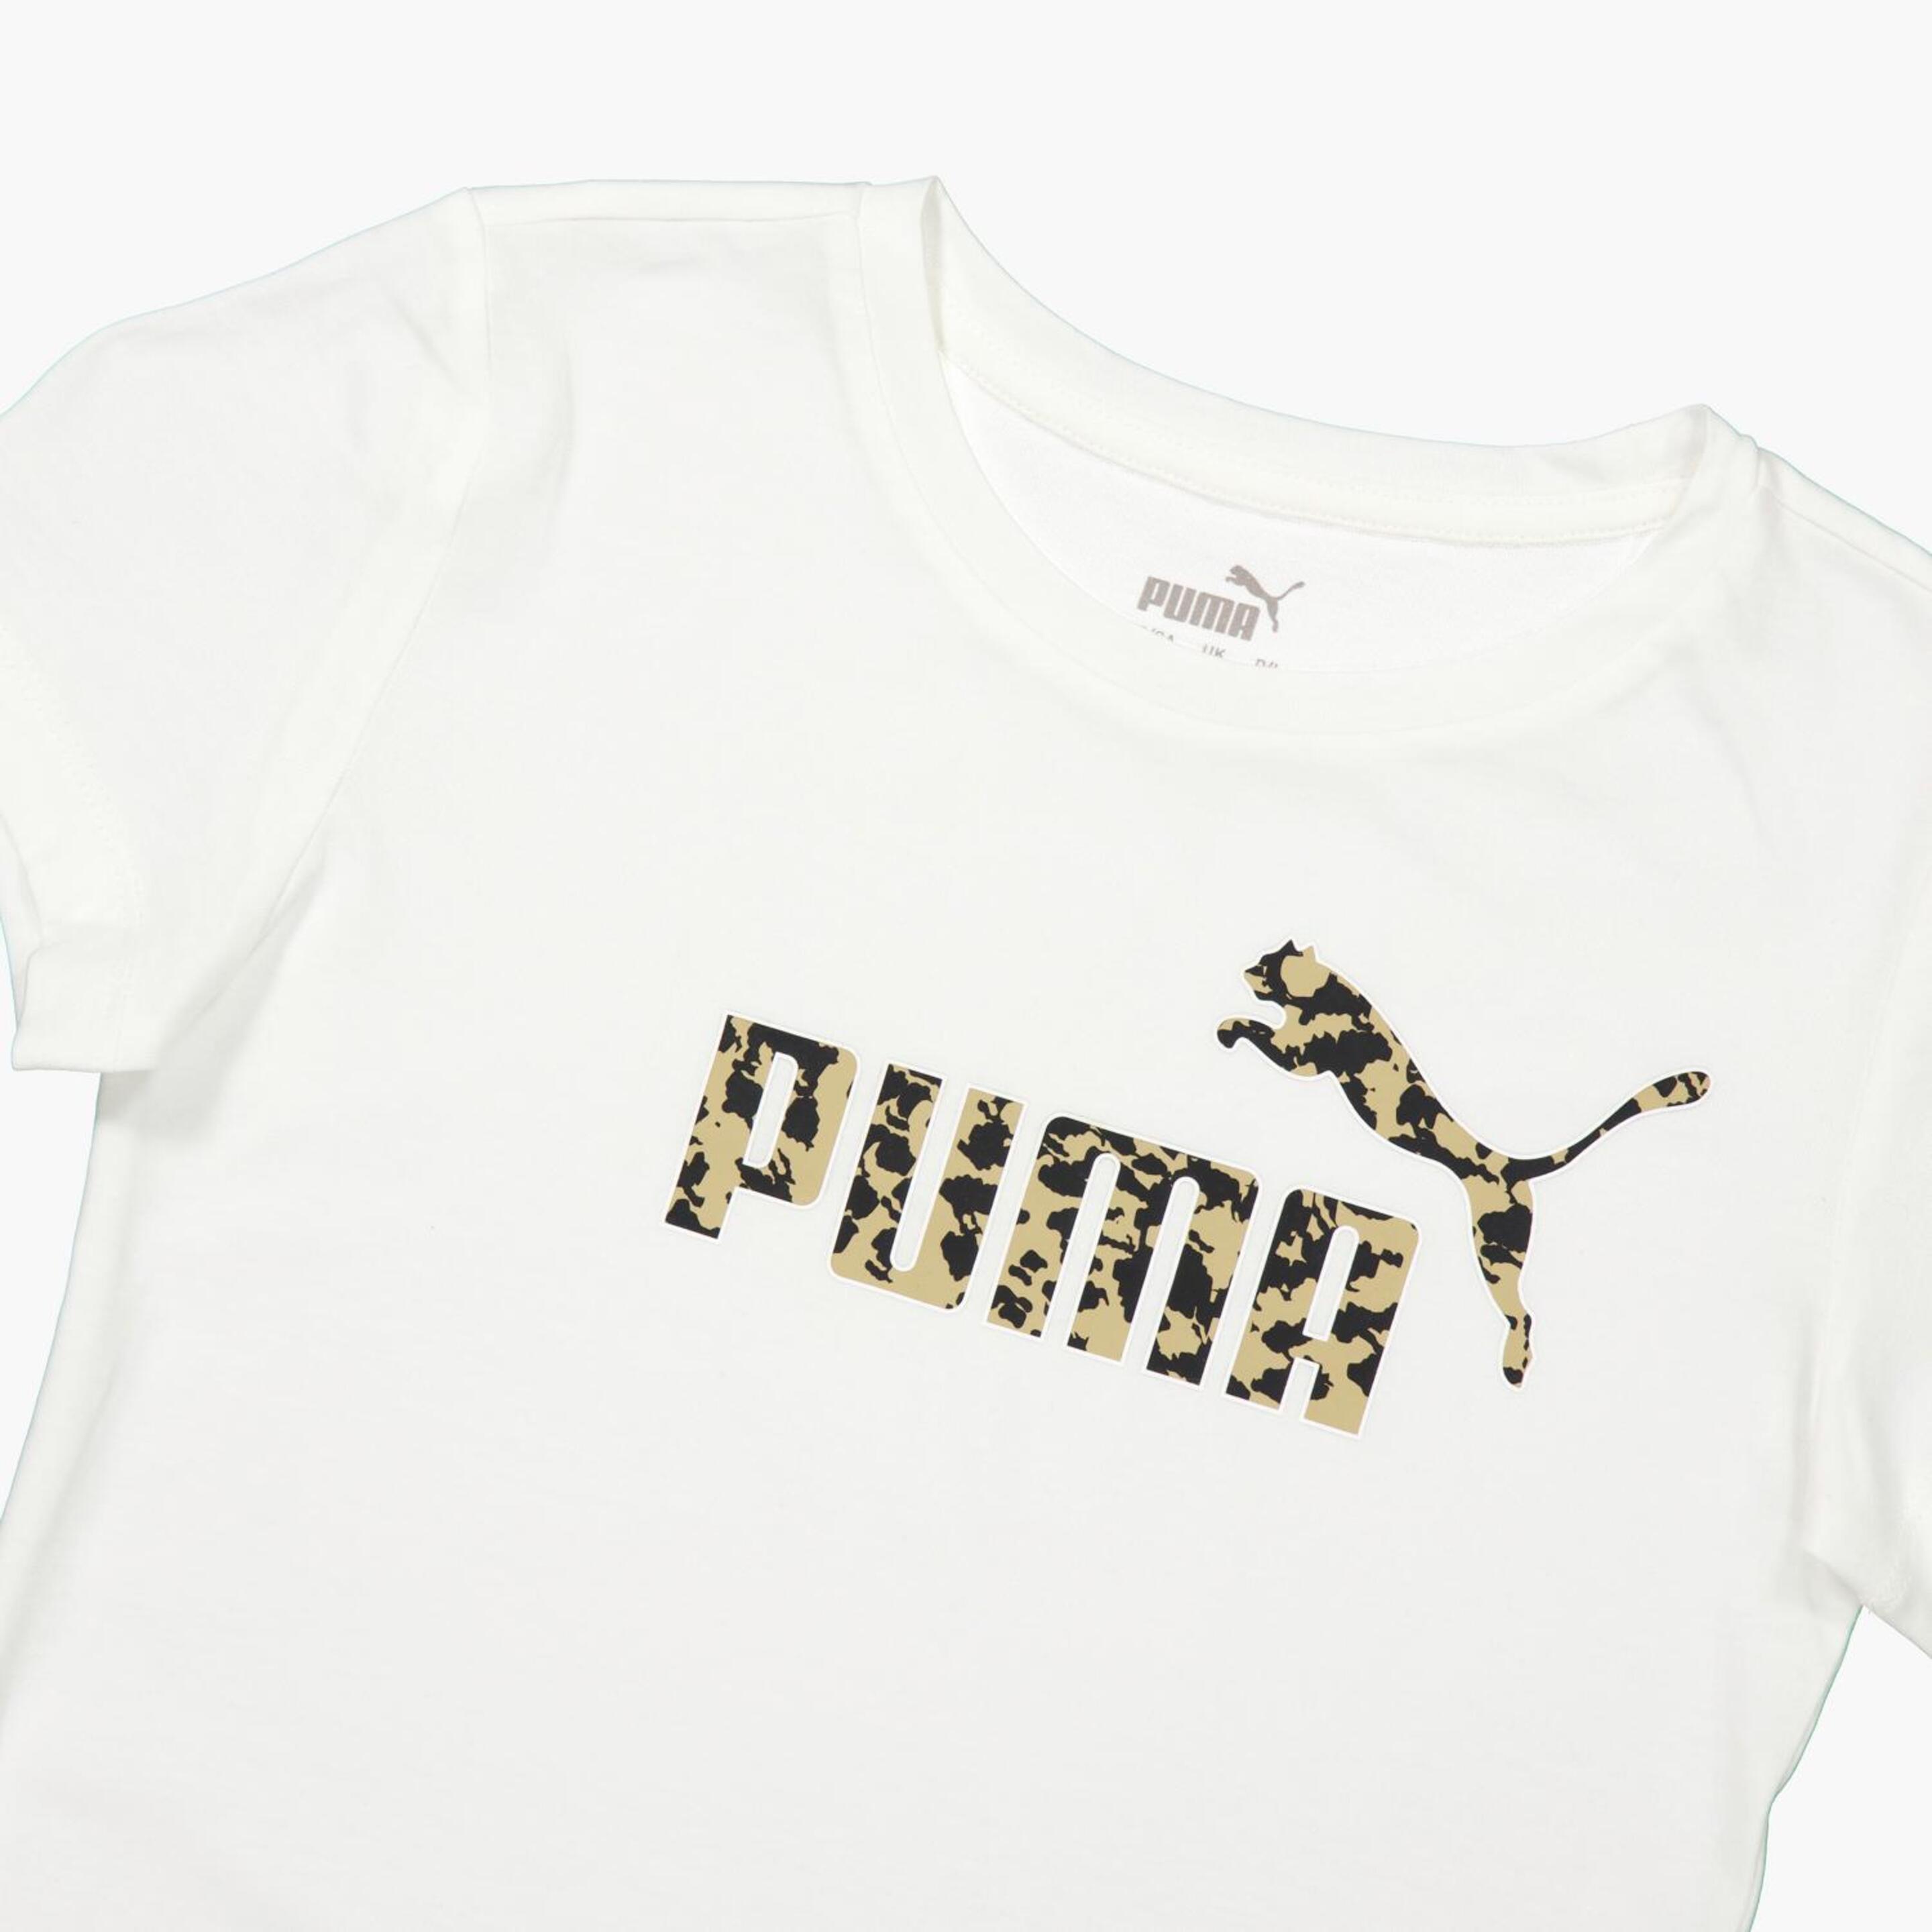 T-shirt Puma